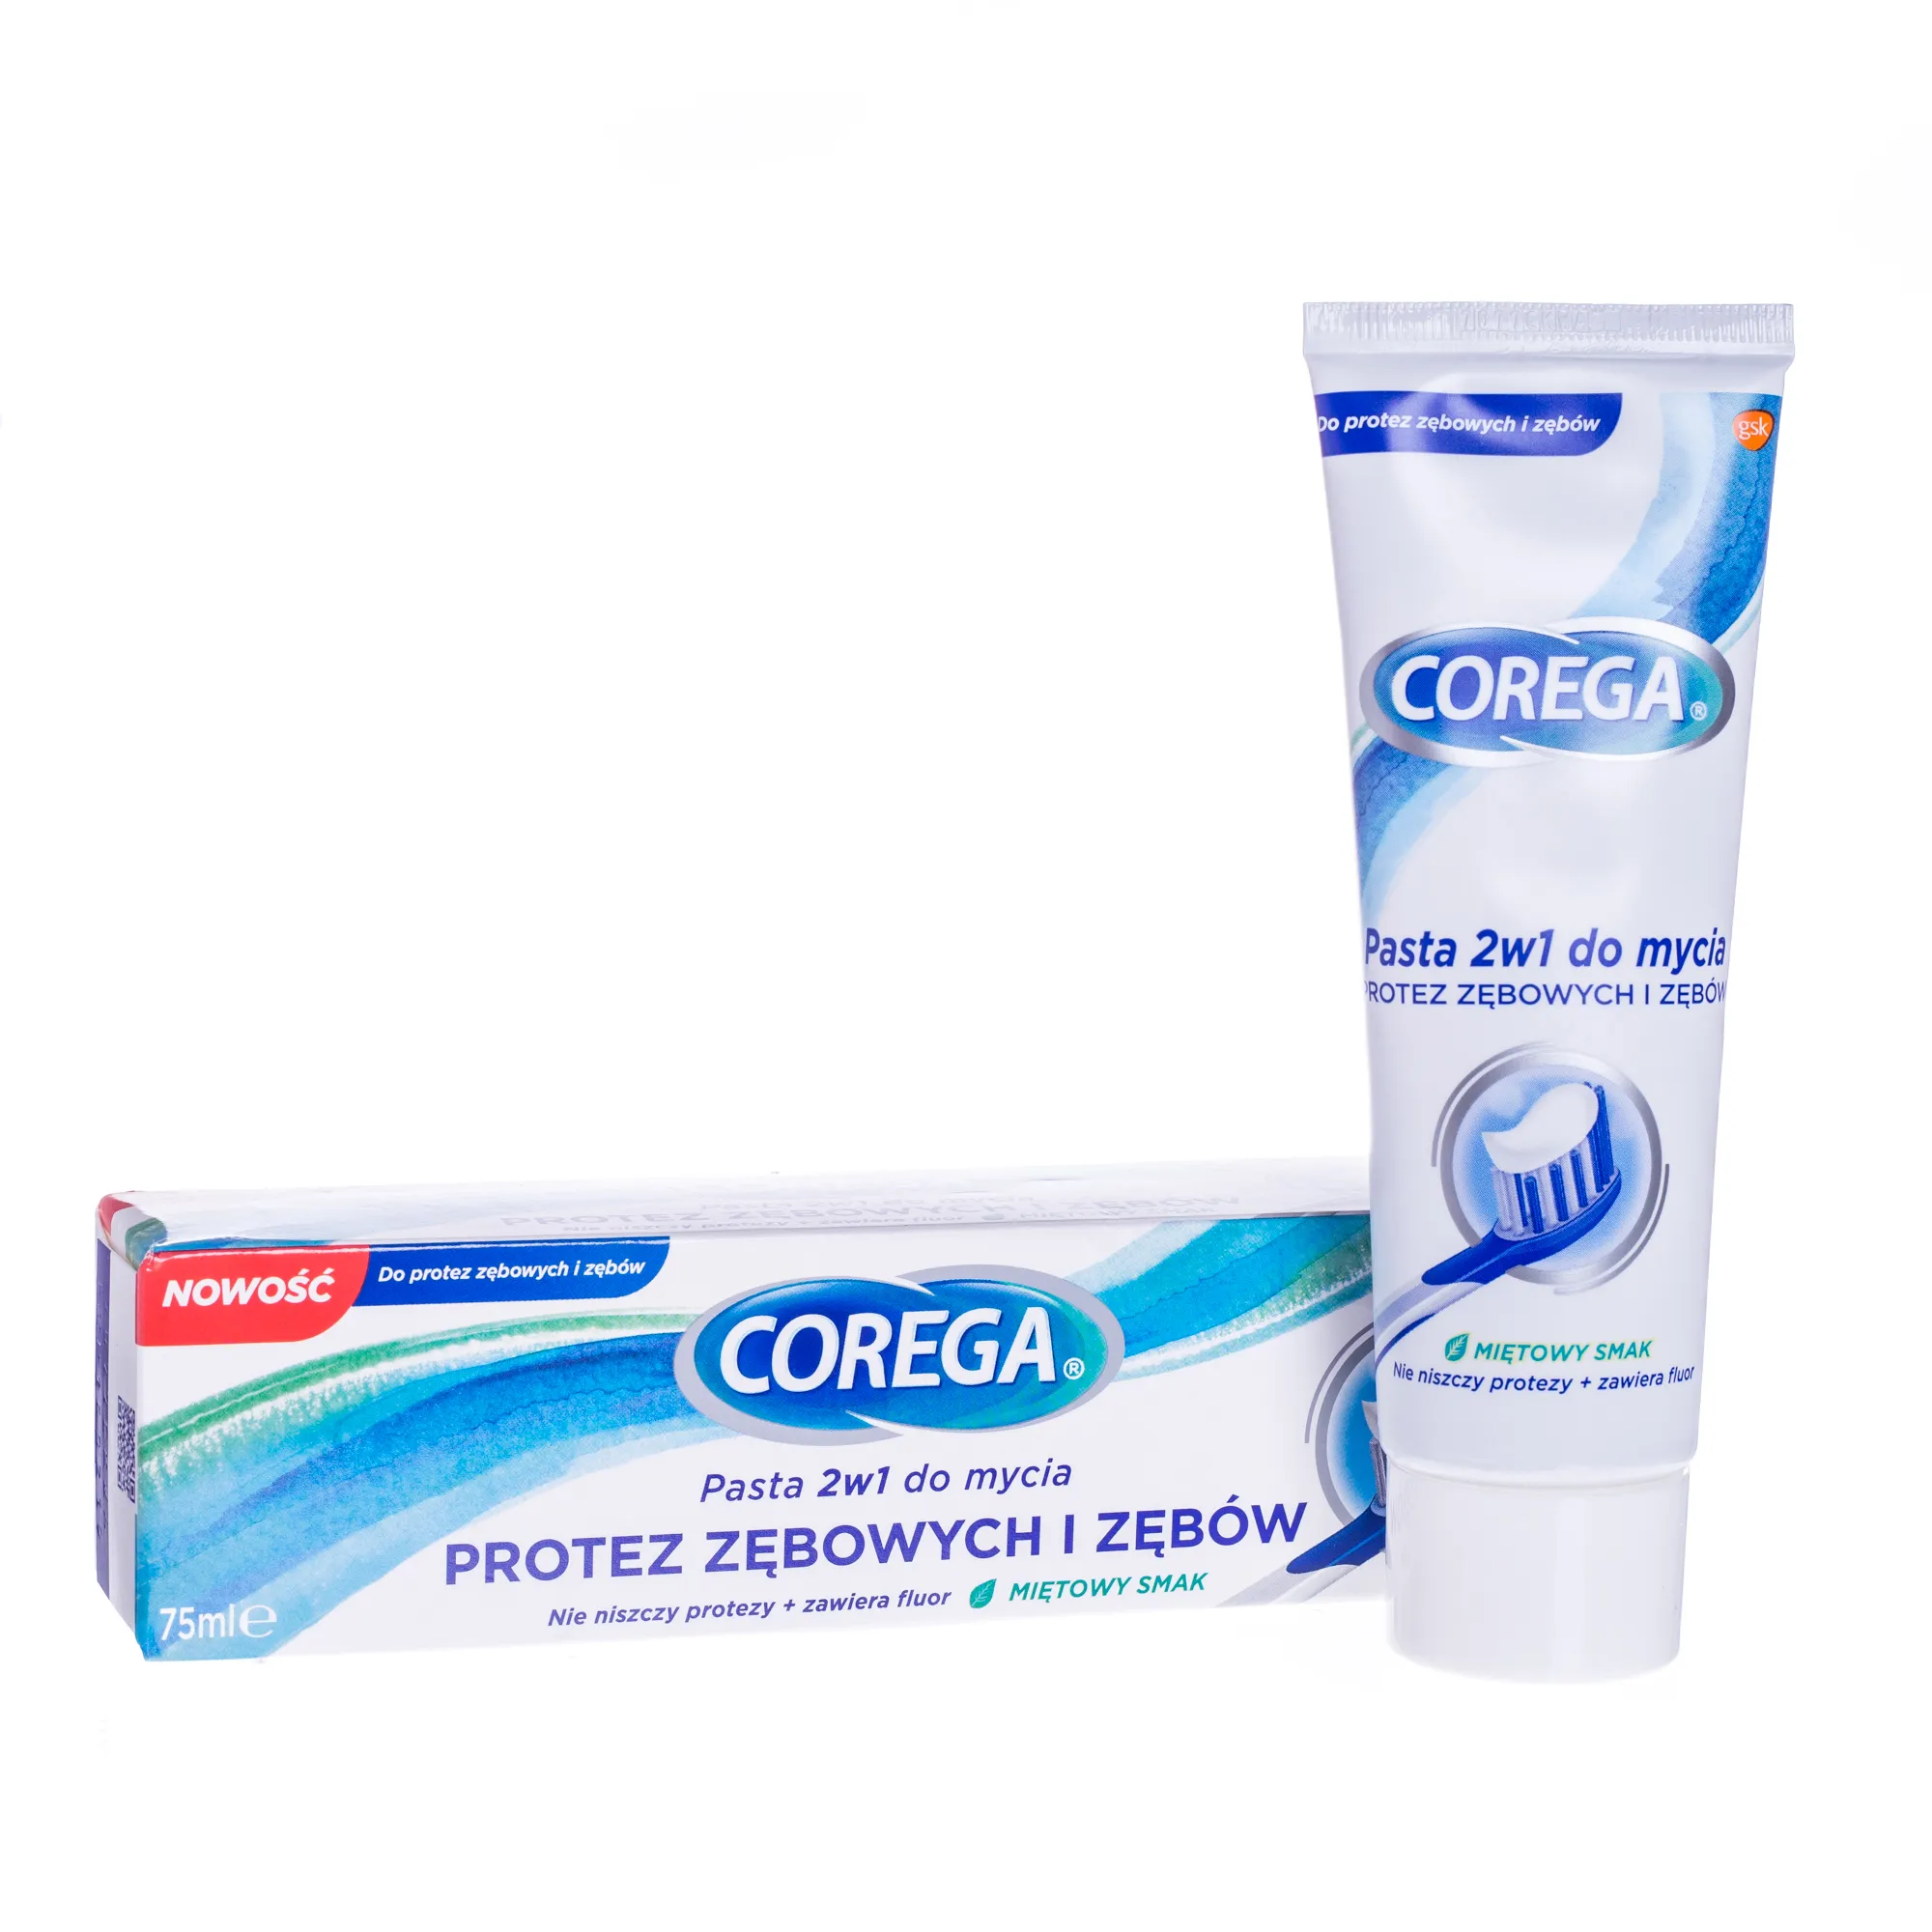 Corega, pasta 2w1 do mycia protez zębowych i zębów, 75 ml